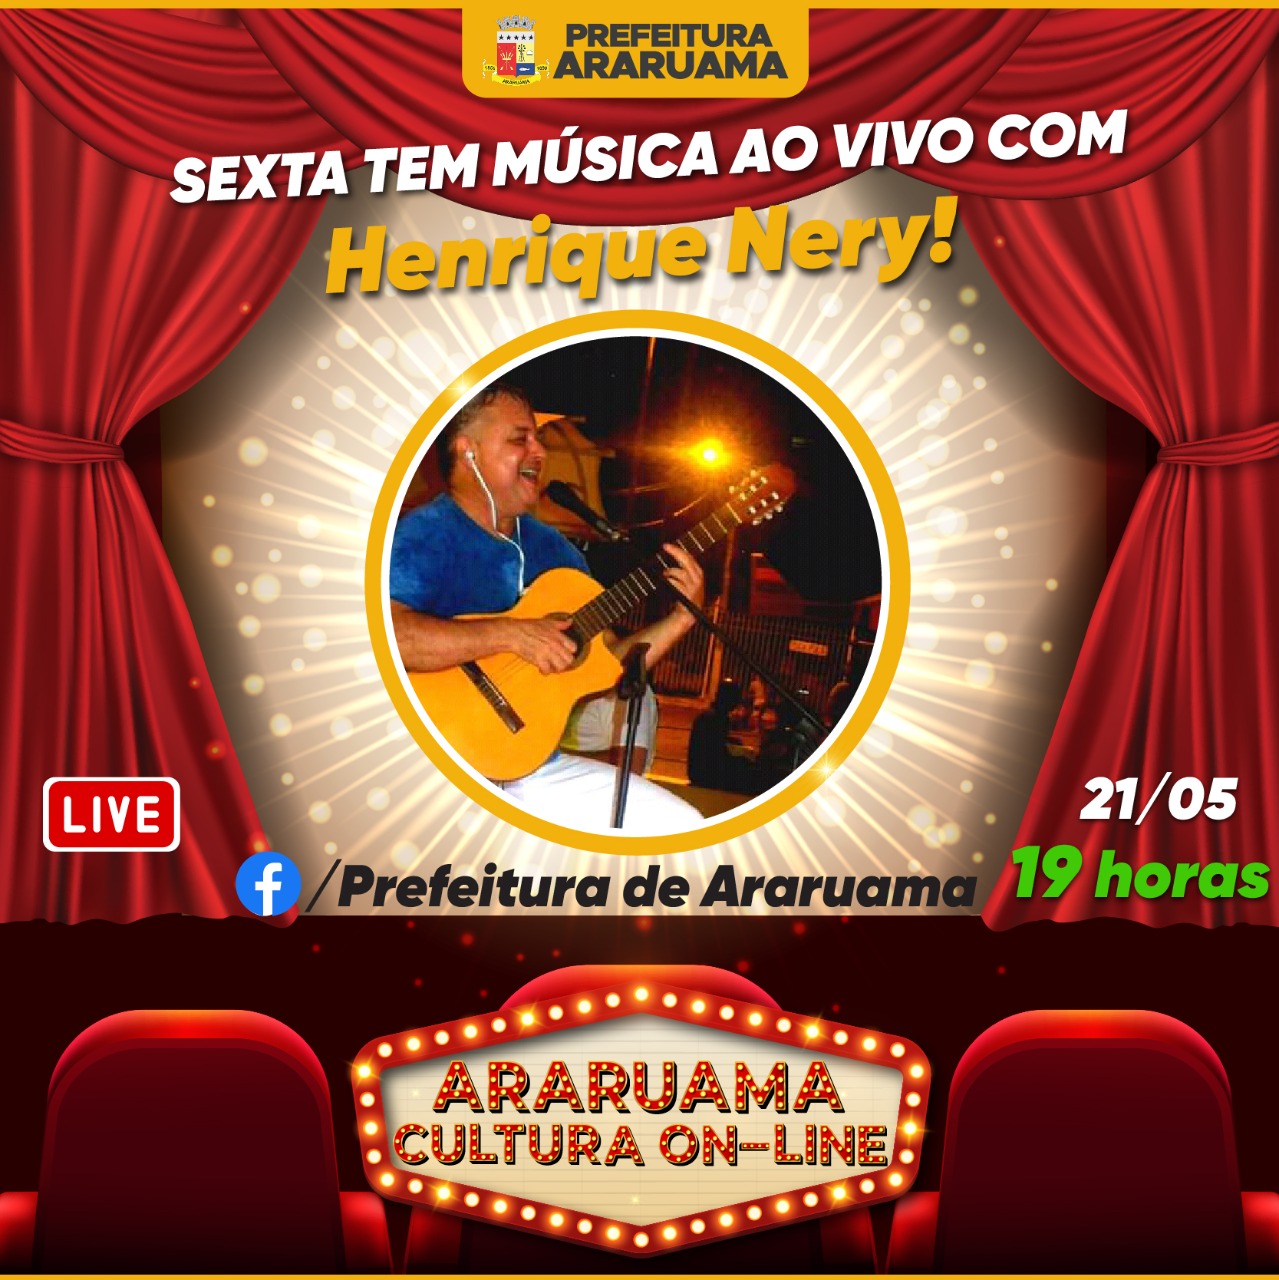 Cantor Henrique Nery vai se apresentar no palco do “Araruama Cultura On-line”, nessa sexta-feira